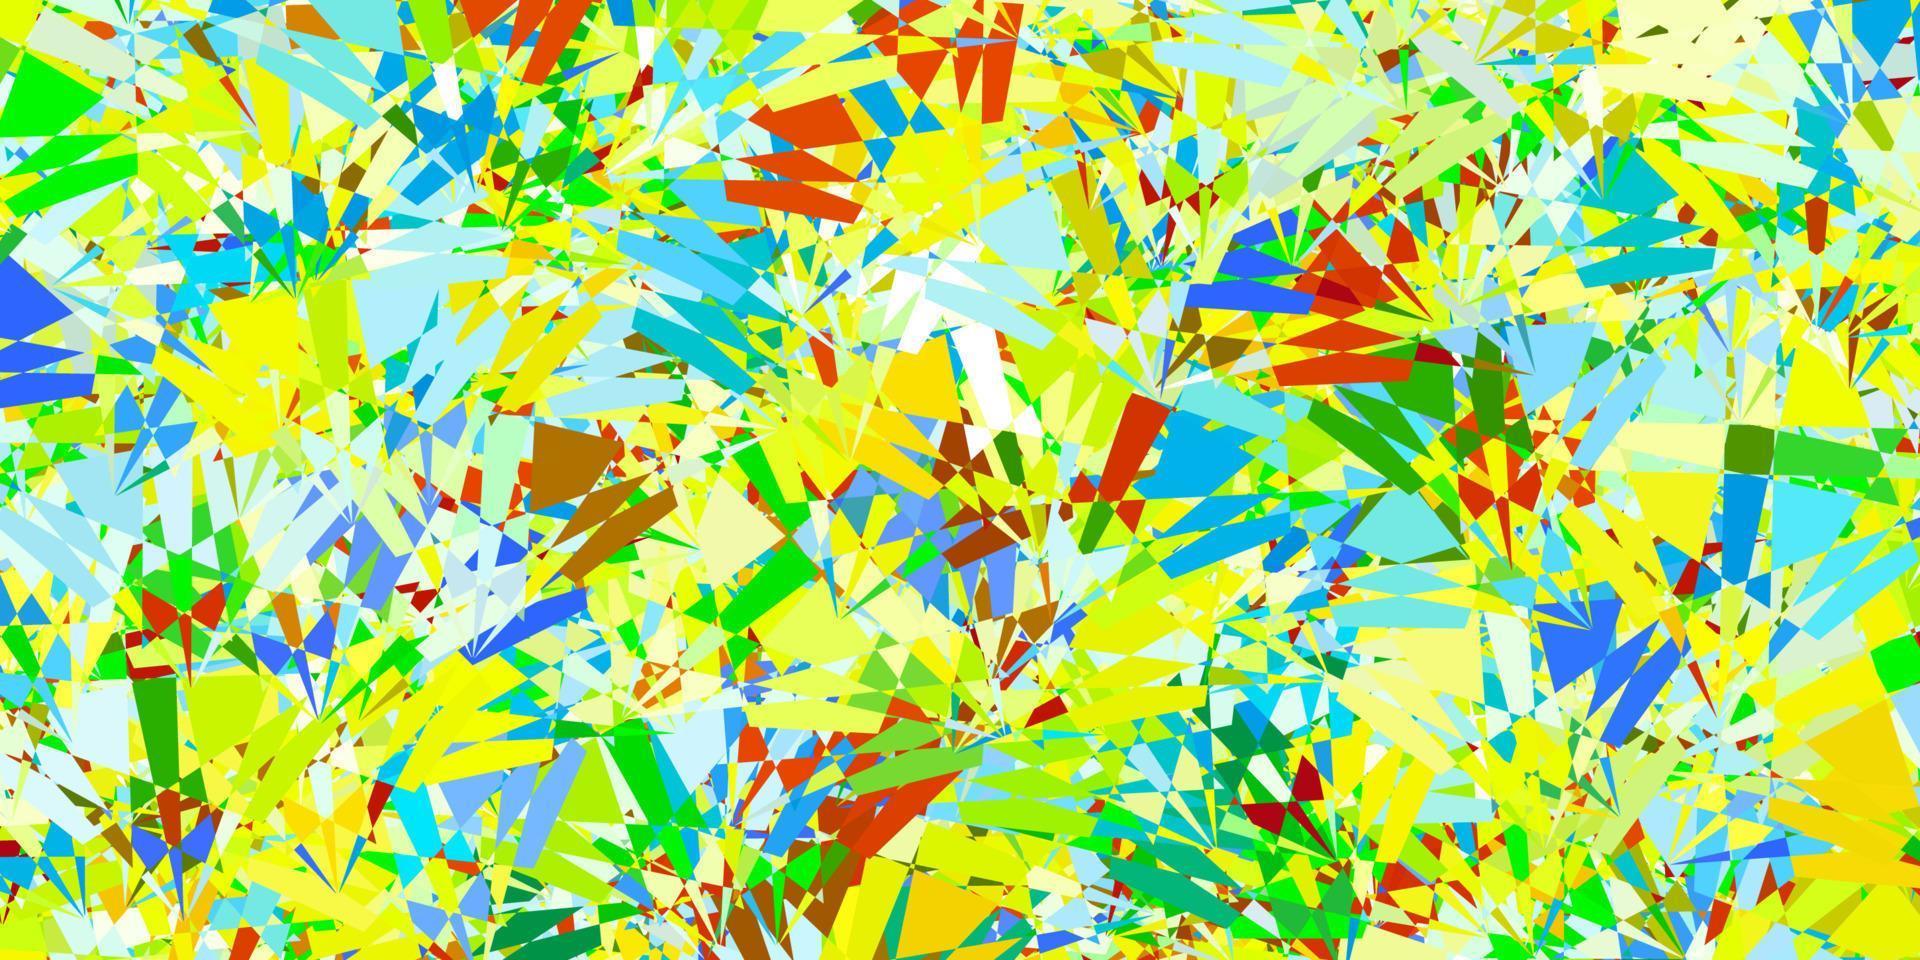 patrón de vector multicolor claro con formas poligonales.